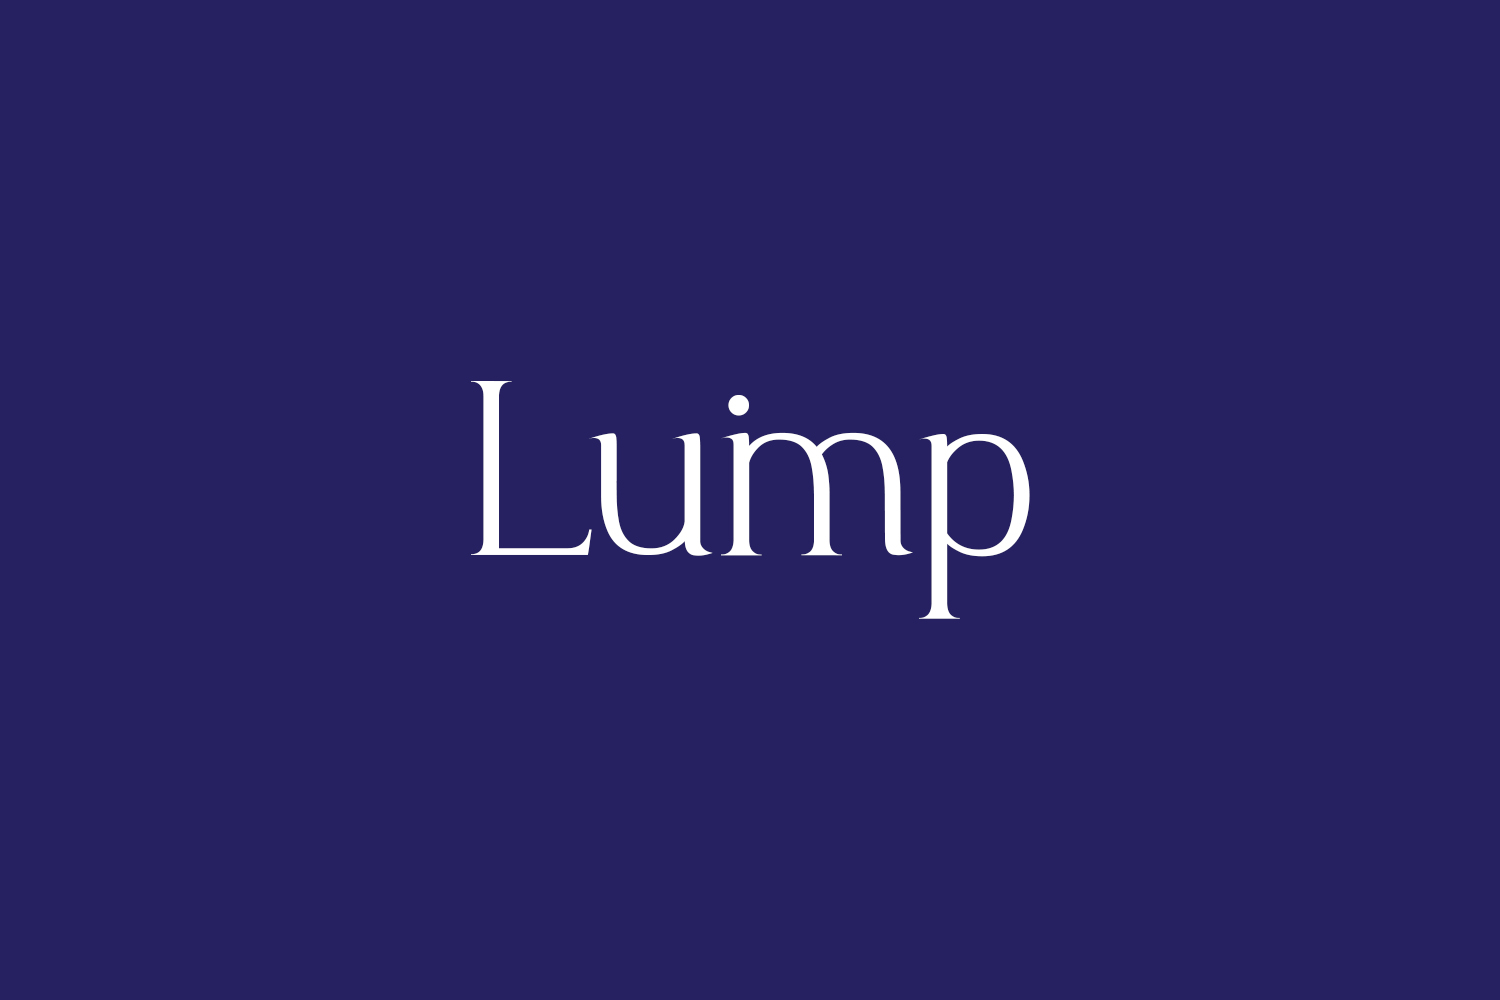 Luimp Free Font